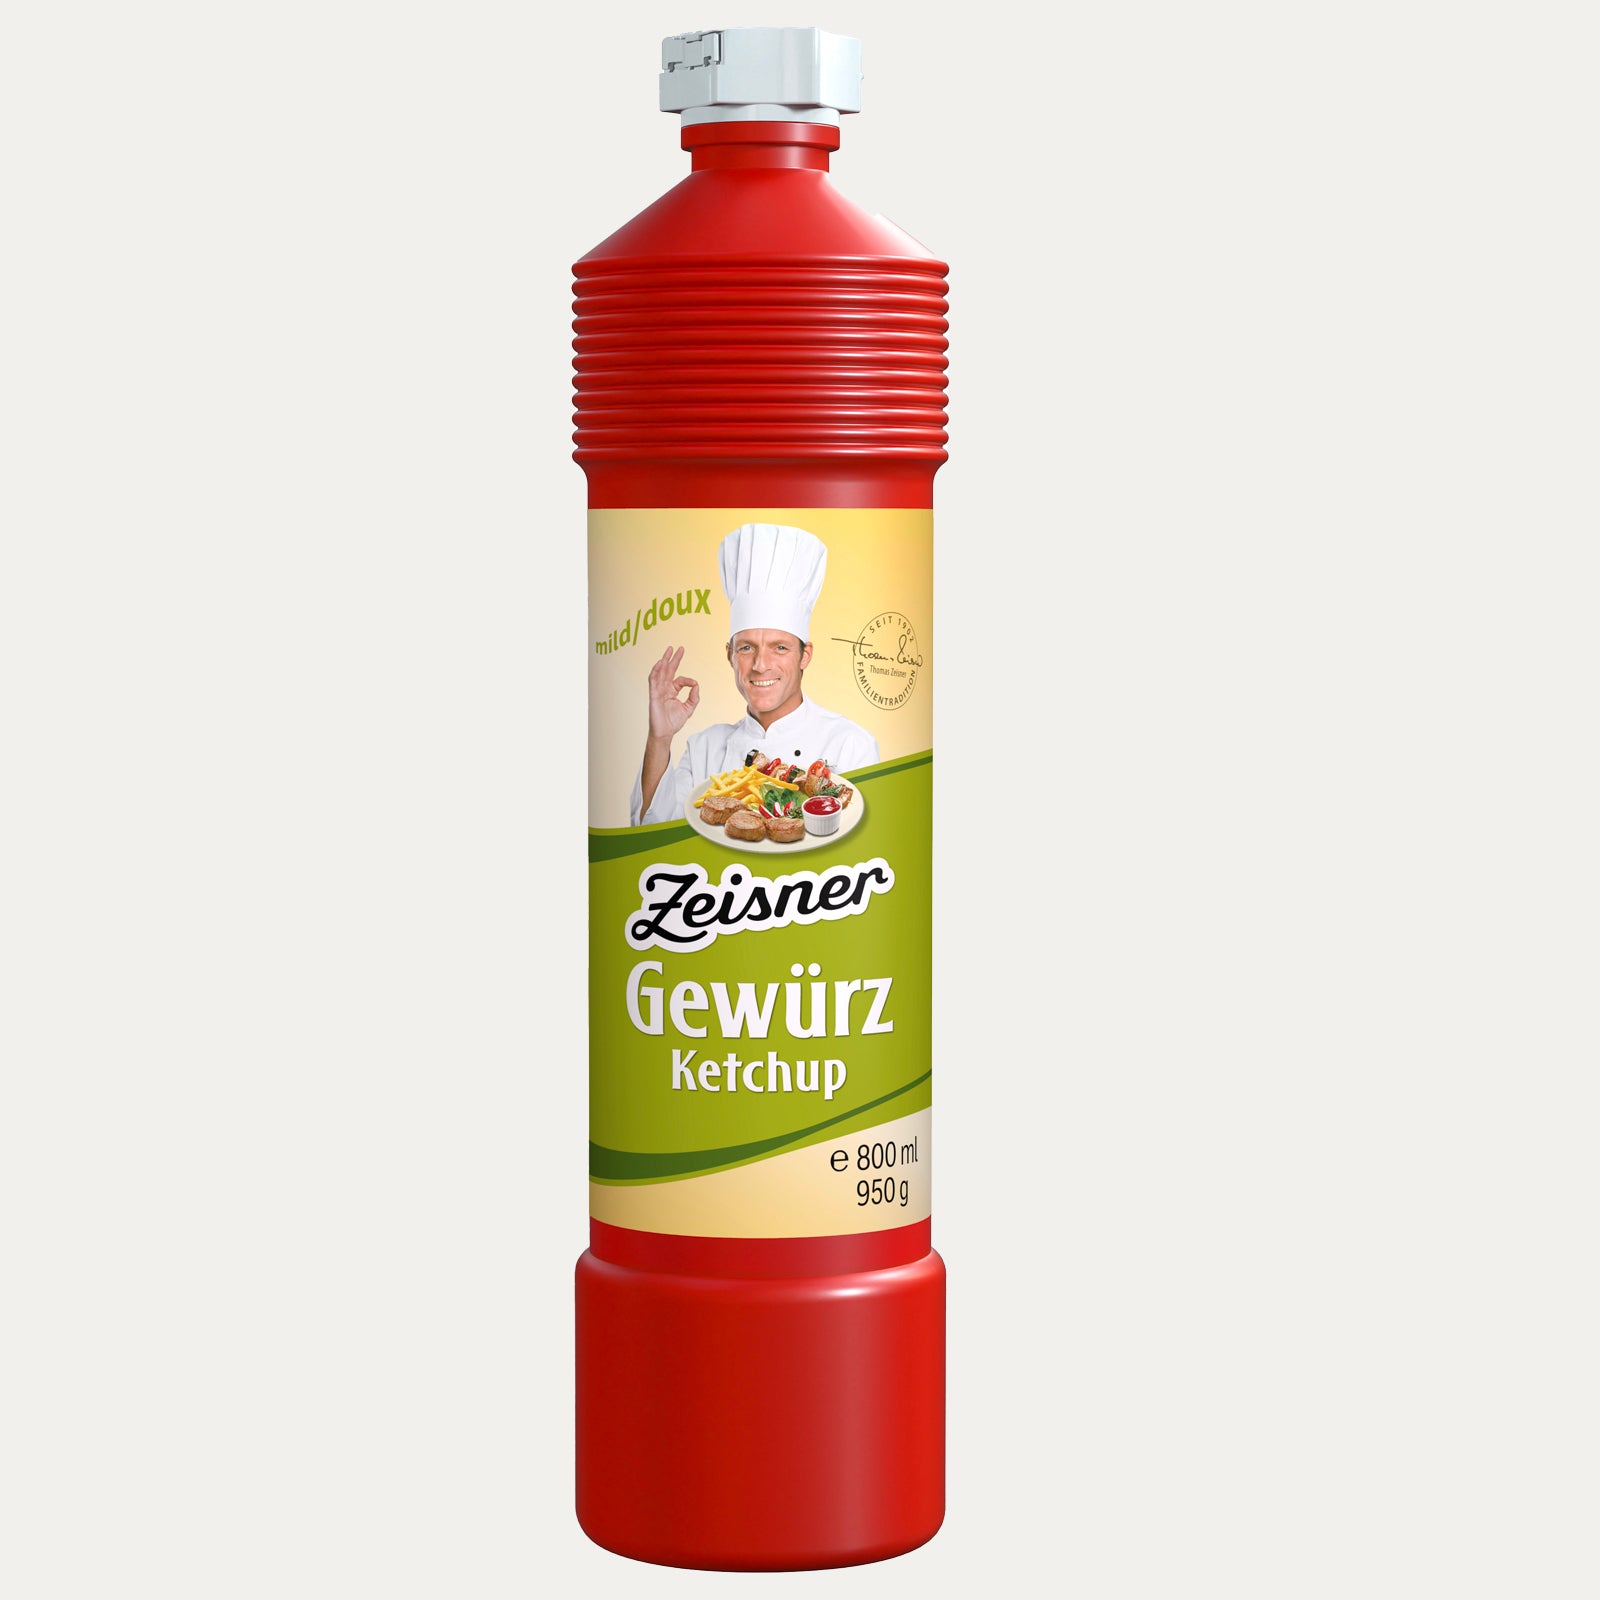 Gewürz Ketchup mild 800ml Zeisner